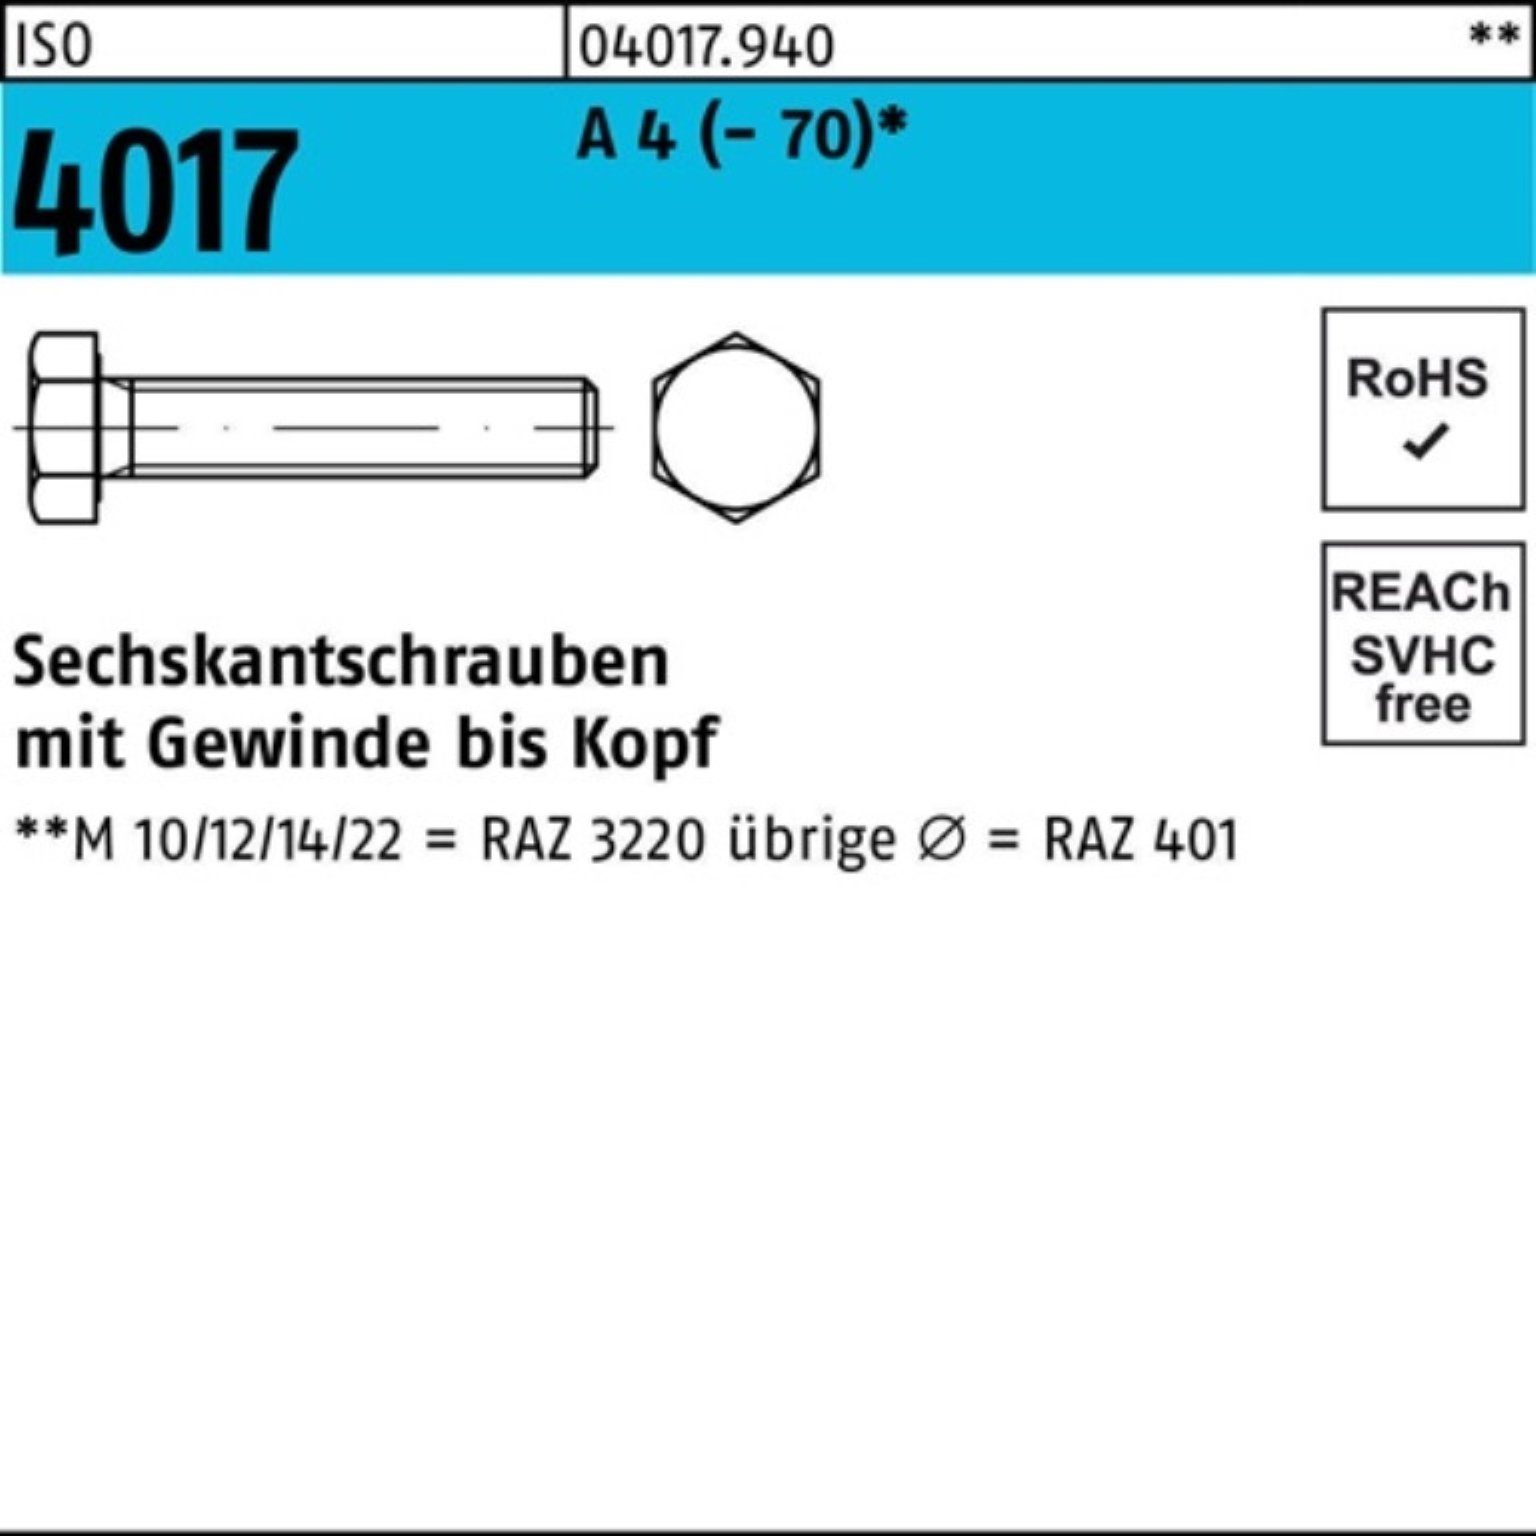 Bufab Sechskantschraube 100er Pack Sechskantschraube ISO 4017 VG M20x 50 A 4 (70) 25 Stück